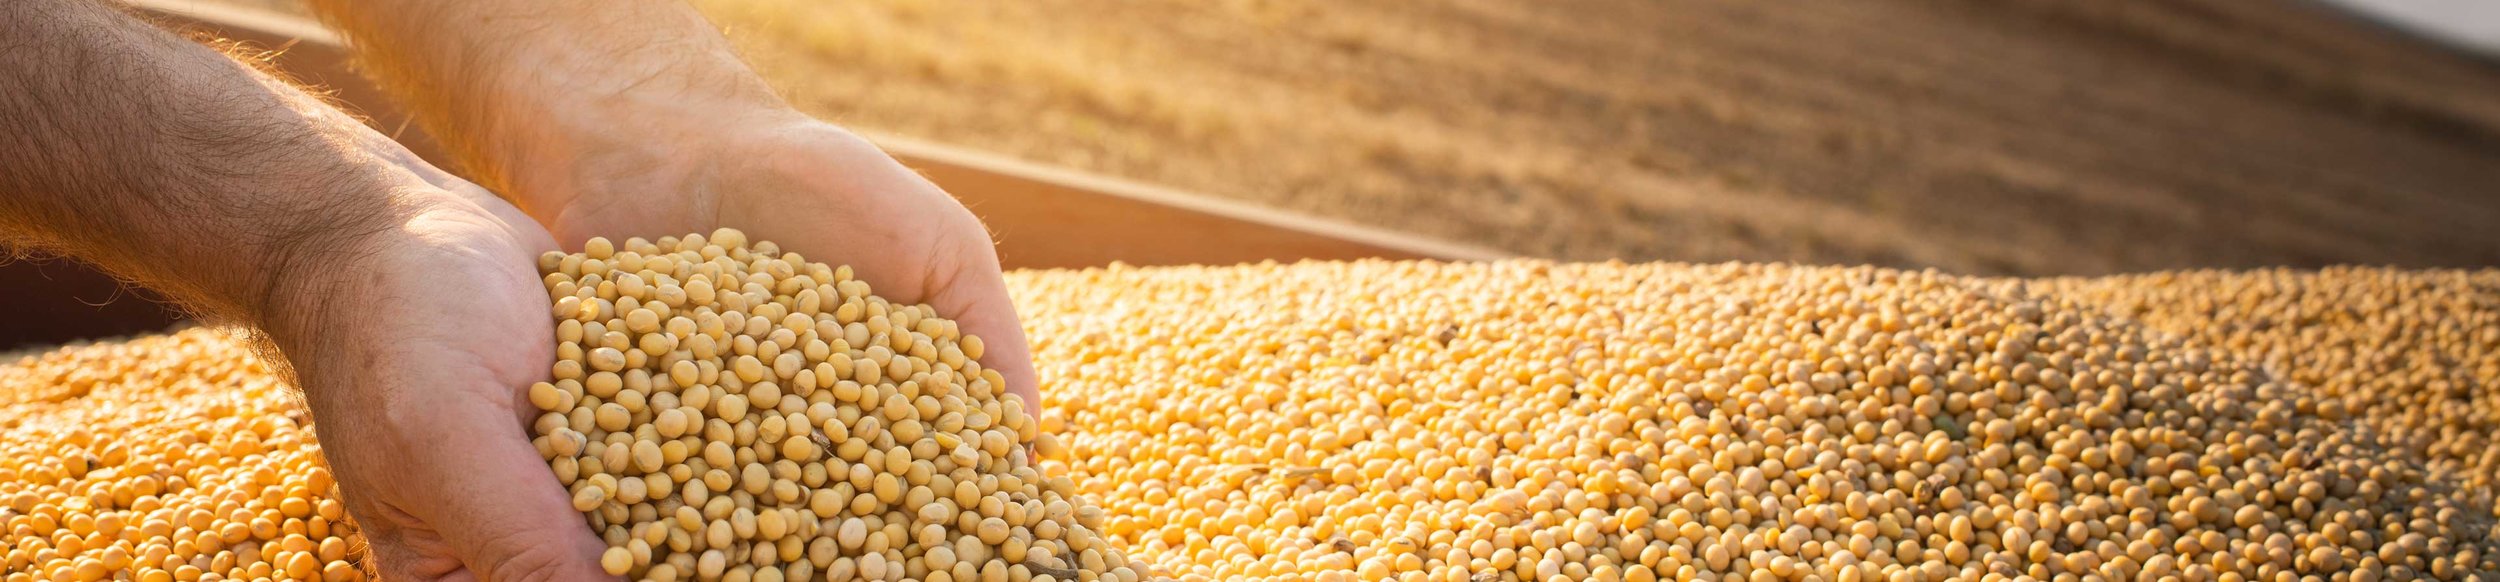 Las semillas de soja, cultivadas ampliamente y de importancia global, son ricas en aceite y proteína.